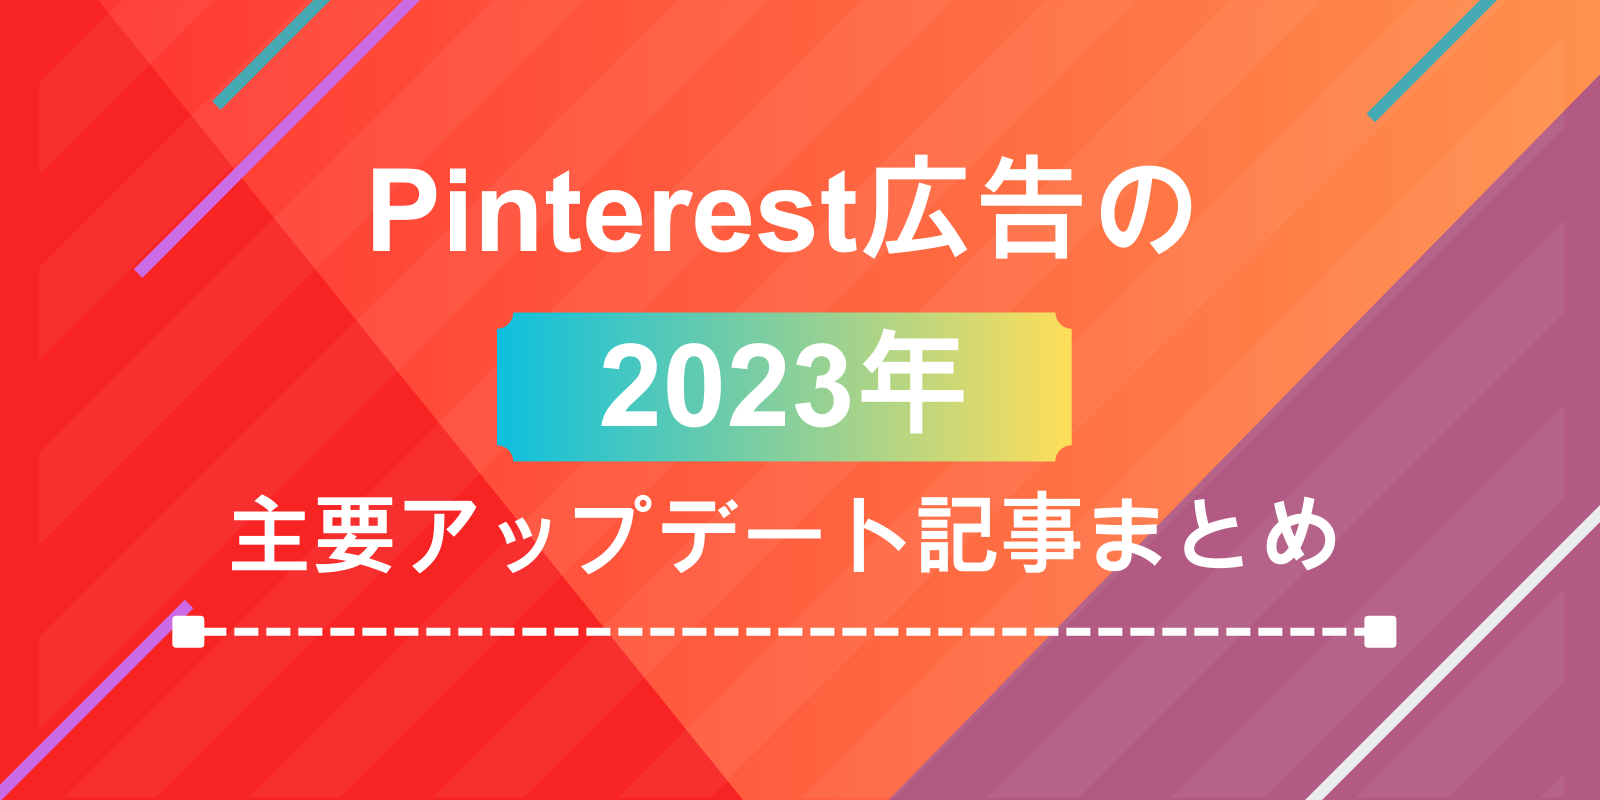 2023年 Pinterest広告の主要アップデートまとめ